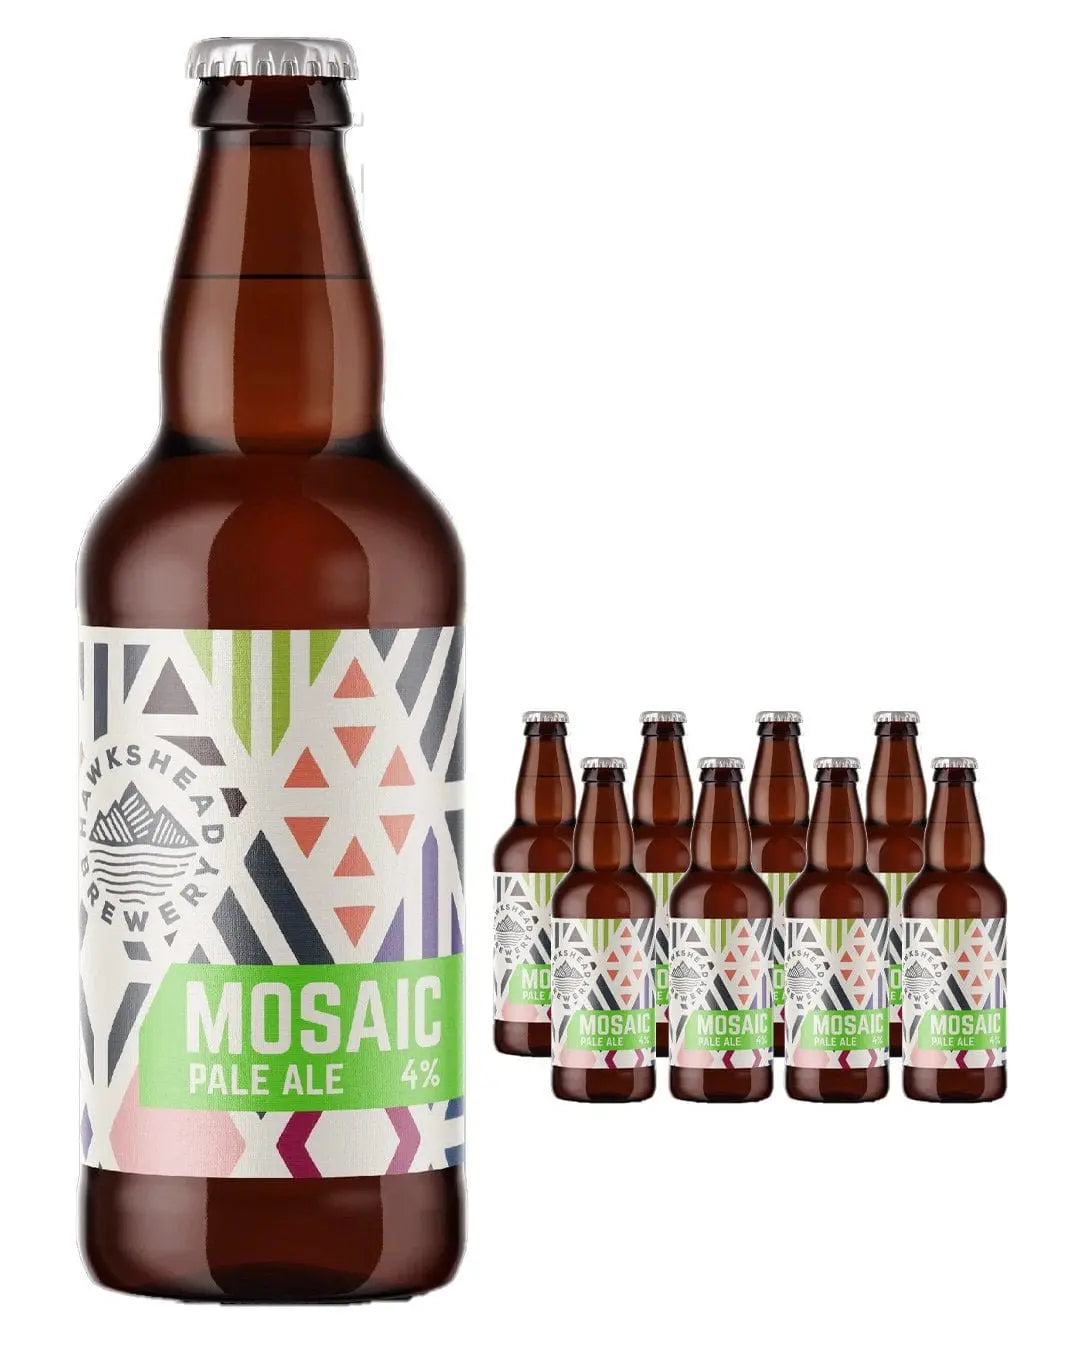 Hawkshead Mosaic Ale Bottle Multipack, 8 x 500 ml Beer